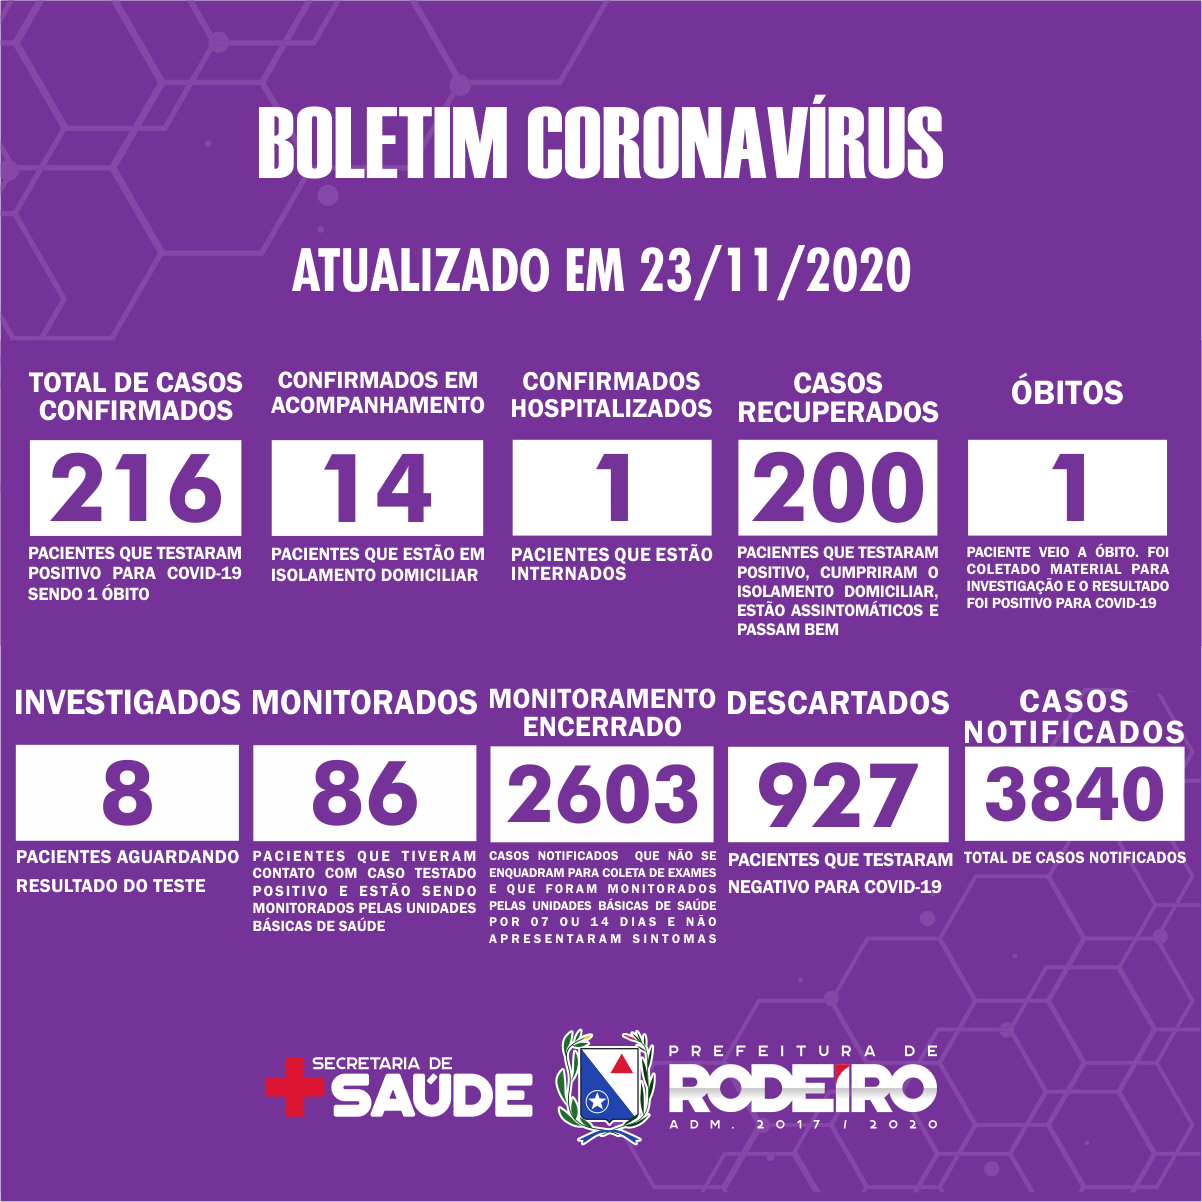 Boletim Epidemiológico do Município de Rodeiro sobre coronavírus, atualizado em 23/11/2020